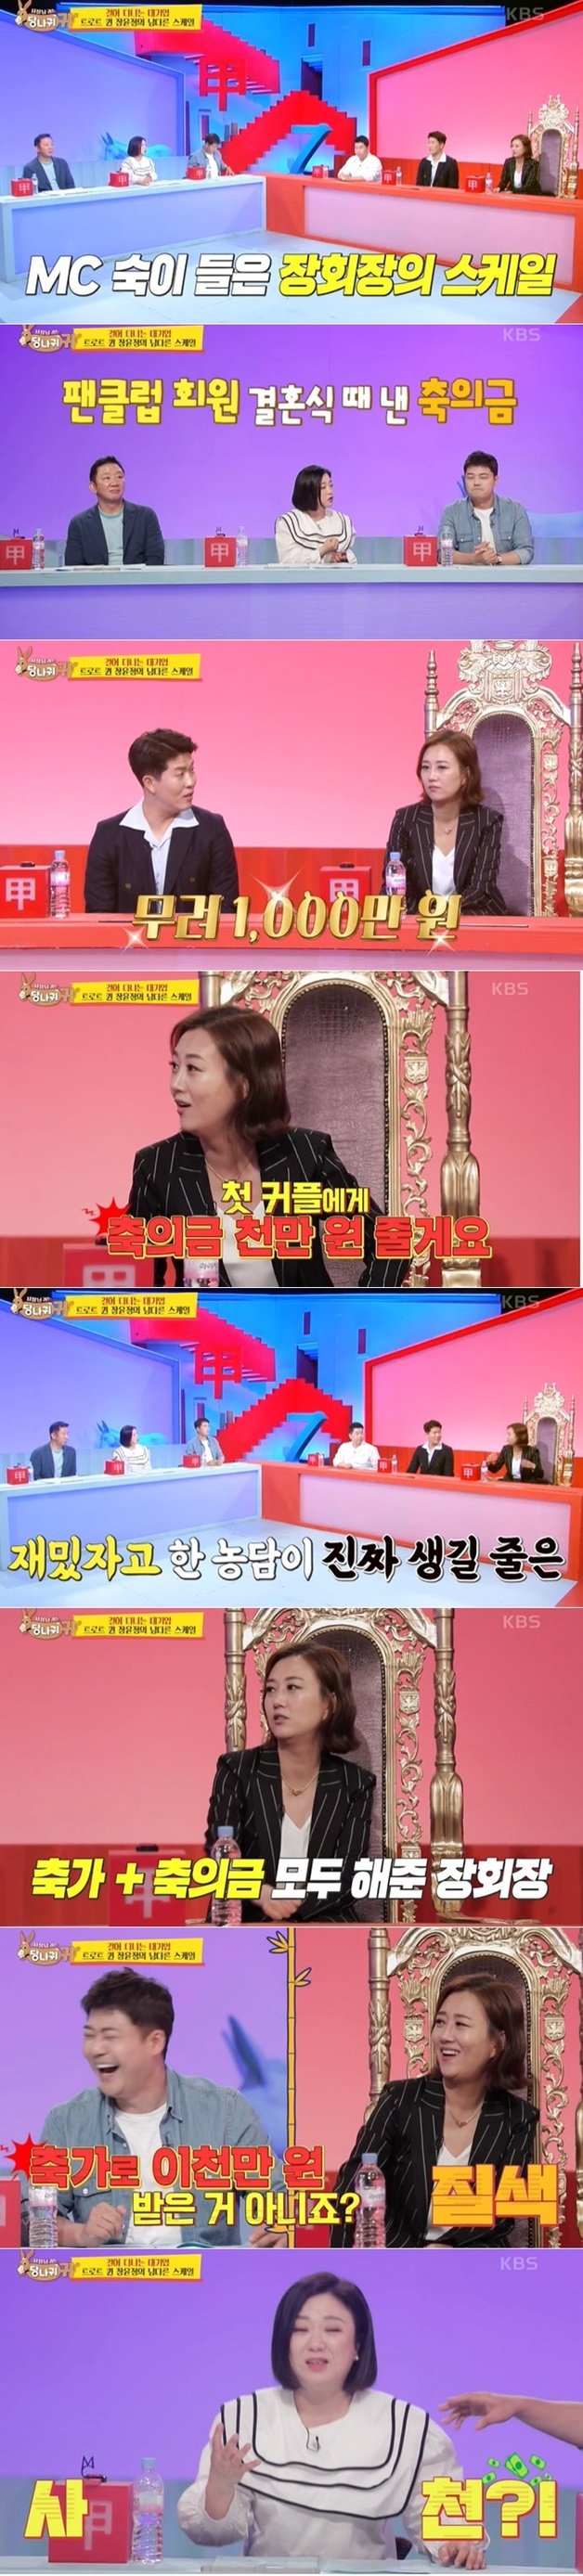 KBS 2TV 예능 ‘사장님 귀는 당나귀 귀’ 방송 화면 갈무리 © 뉴스1